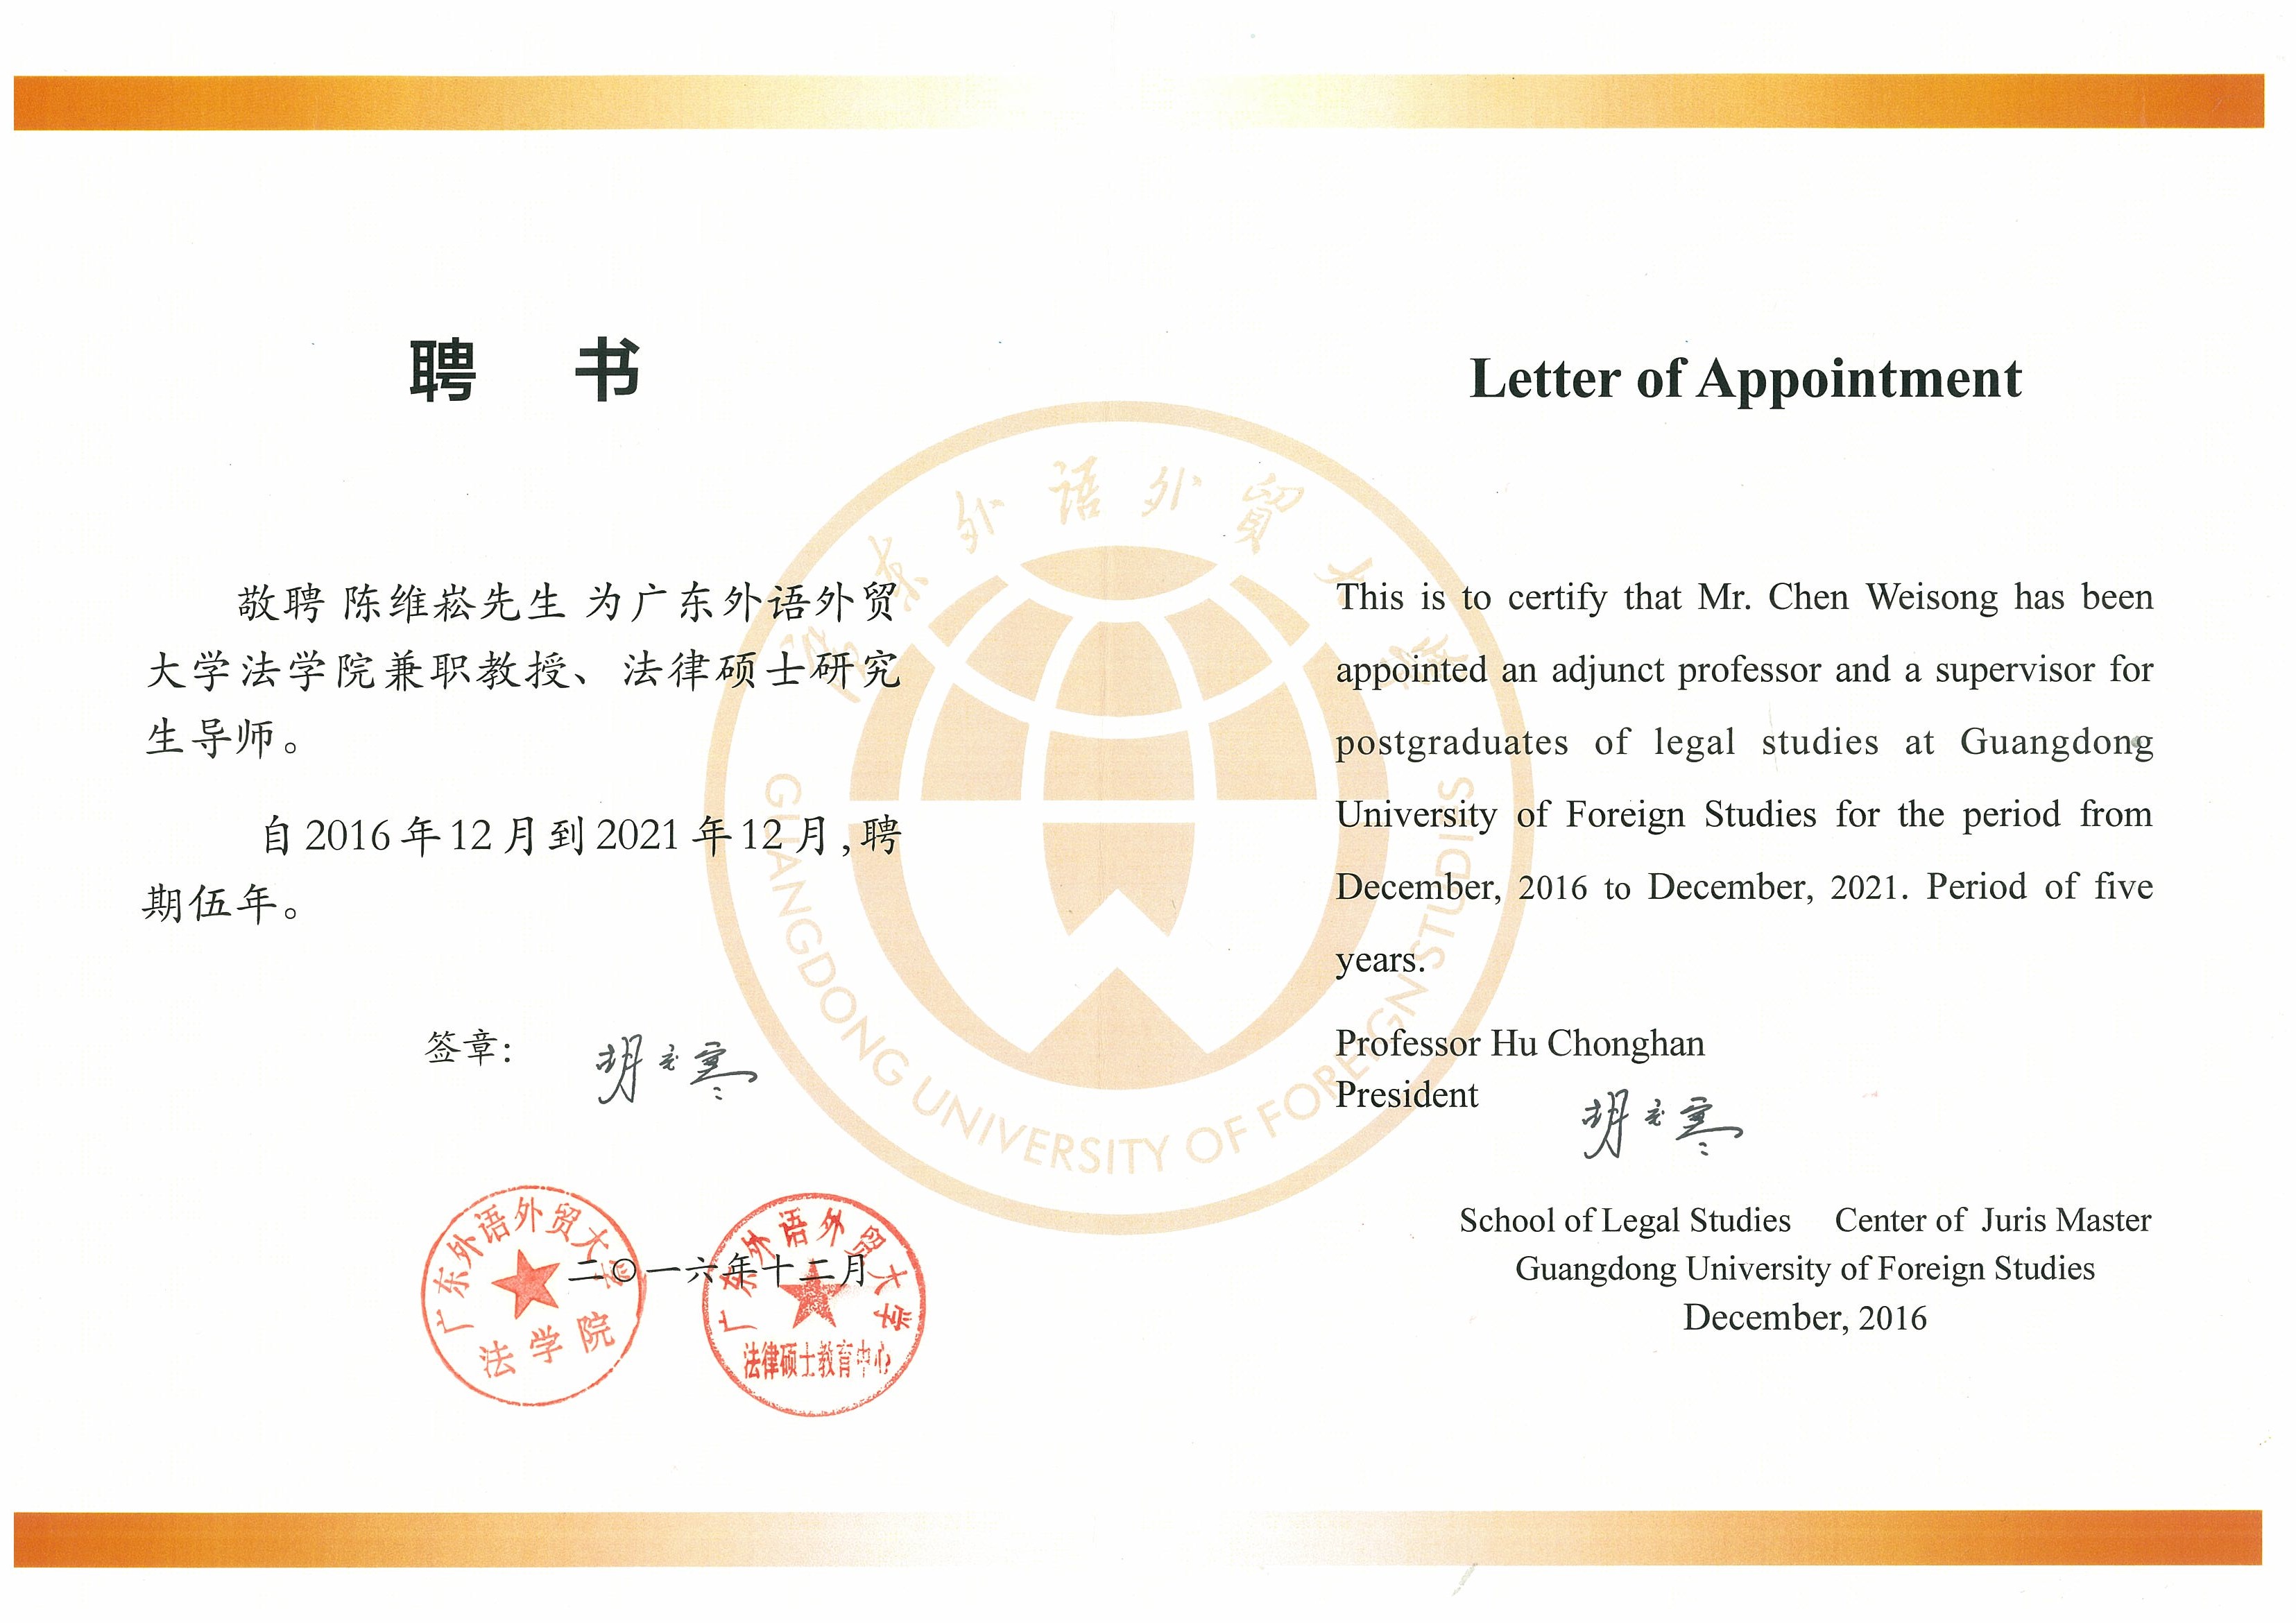 陈维崧律师被聘为广东外语外贸大学兼职教授、法律硕士研究生导师